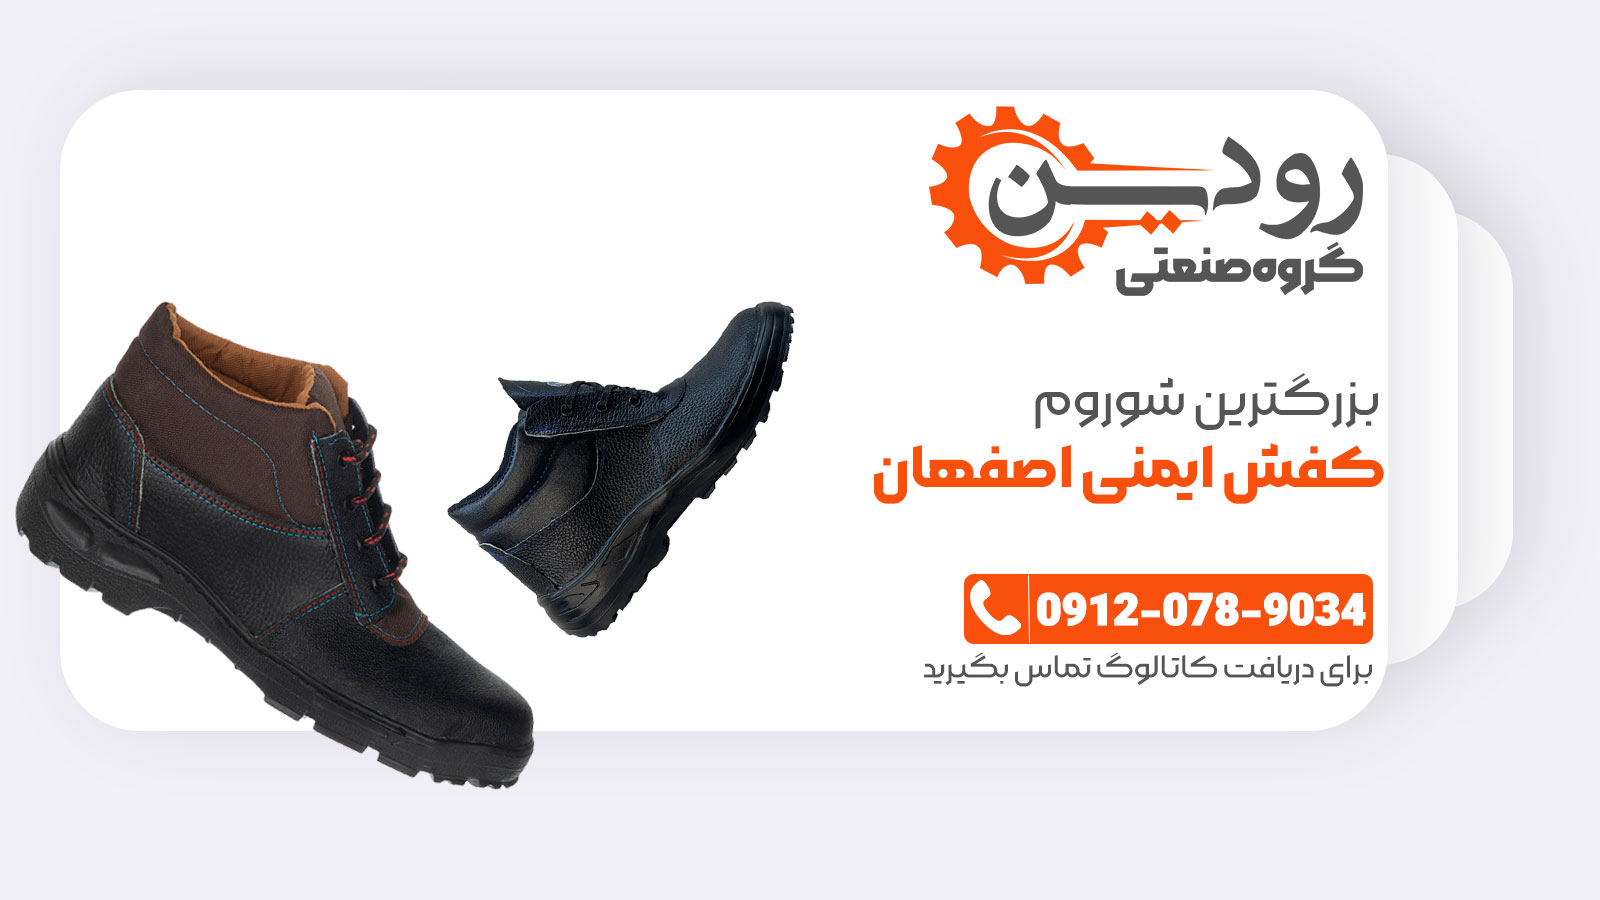 کفش ایمنی رنج ارزان قیمت و اکونومی در اصفهان فروش بسیار بالایی دارد.